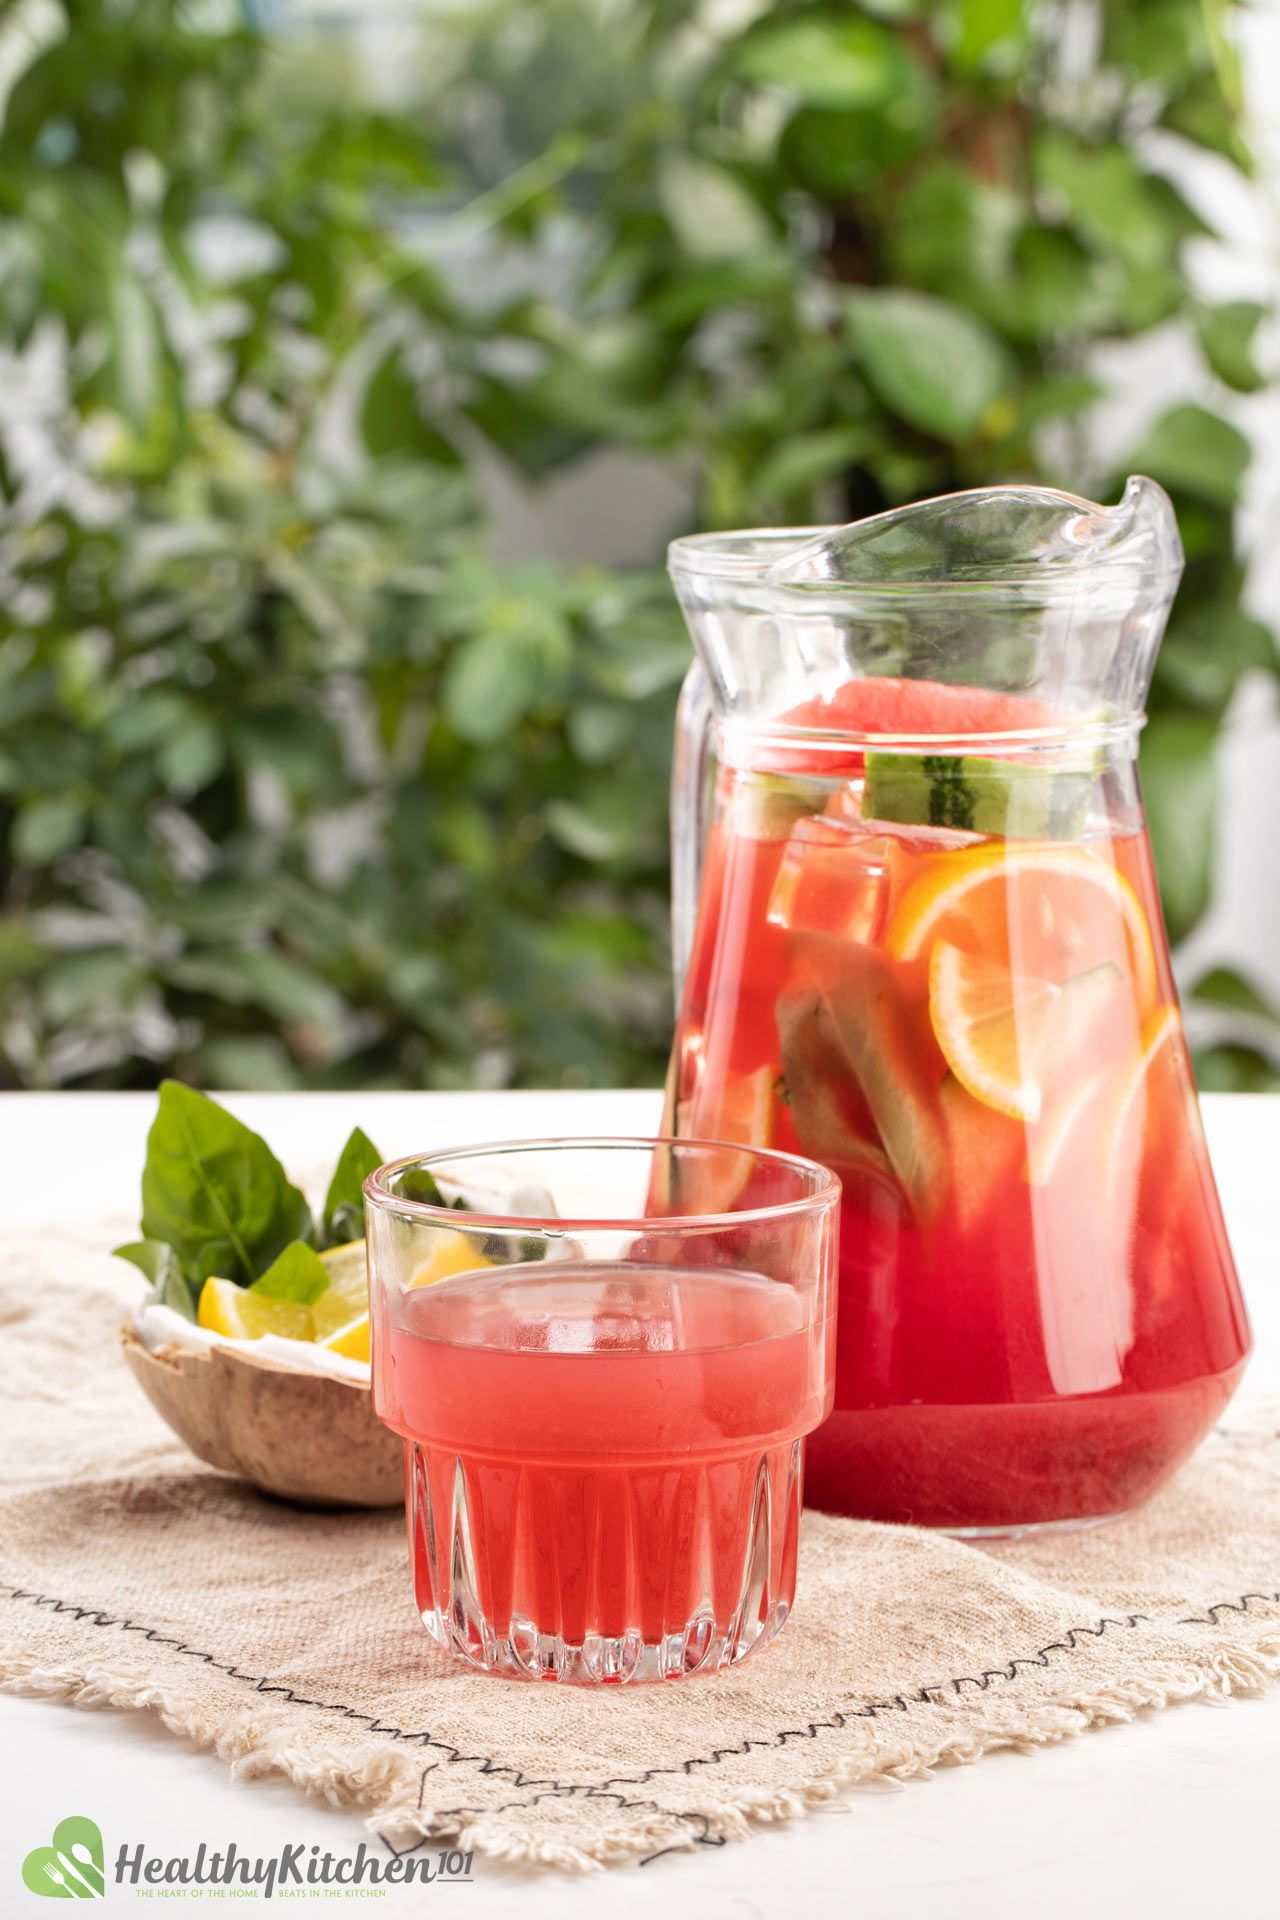 Watermelon Jungle Juice Recipe